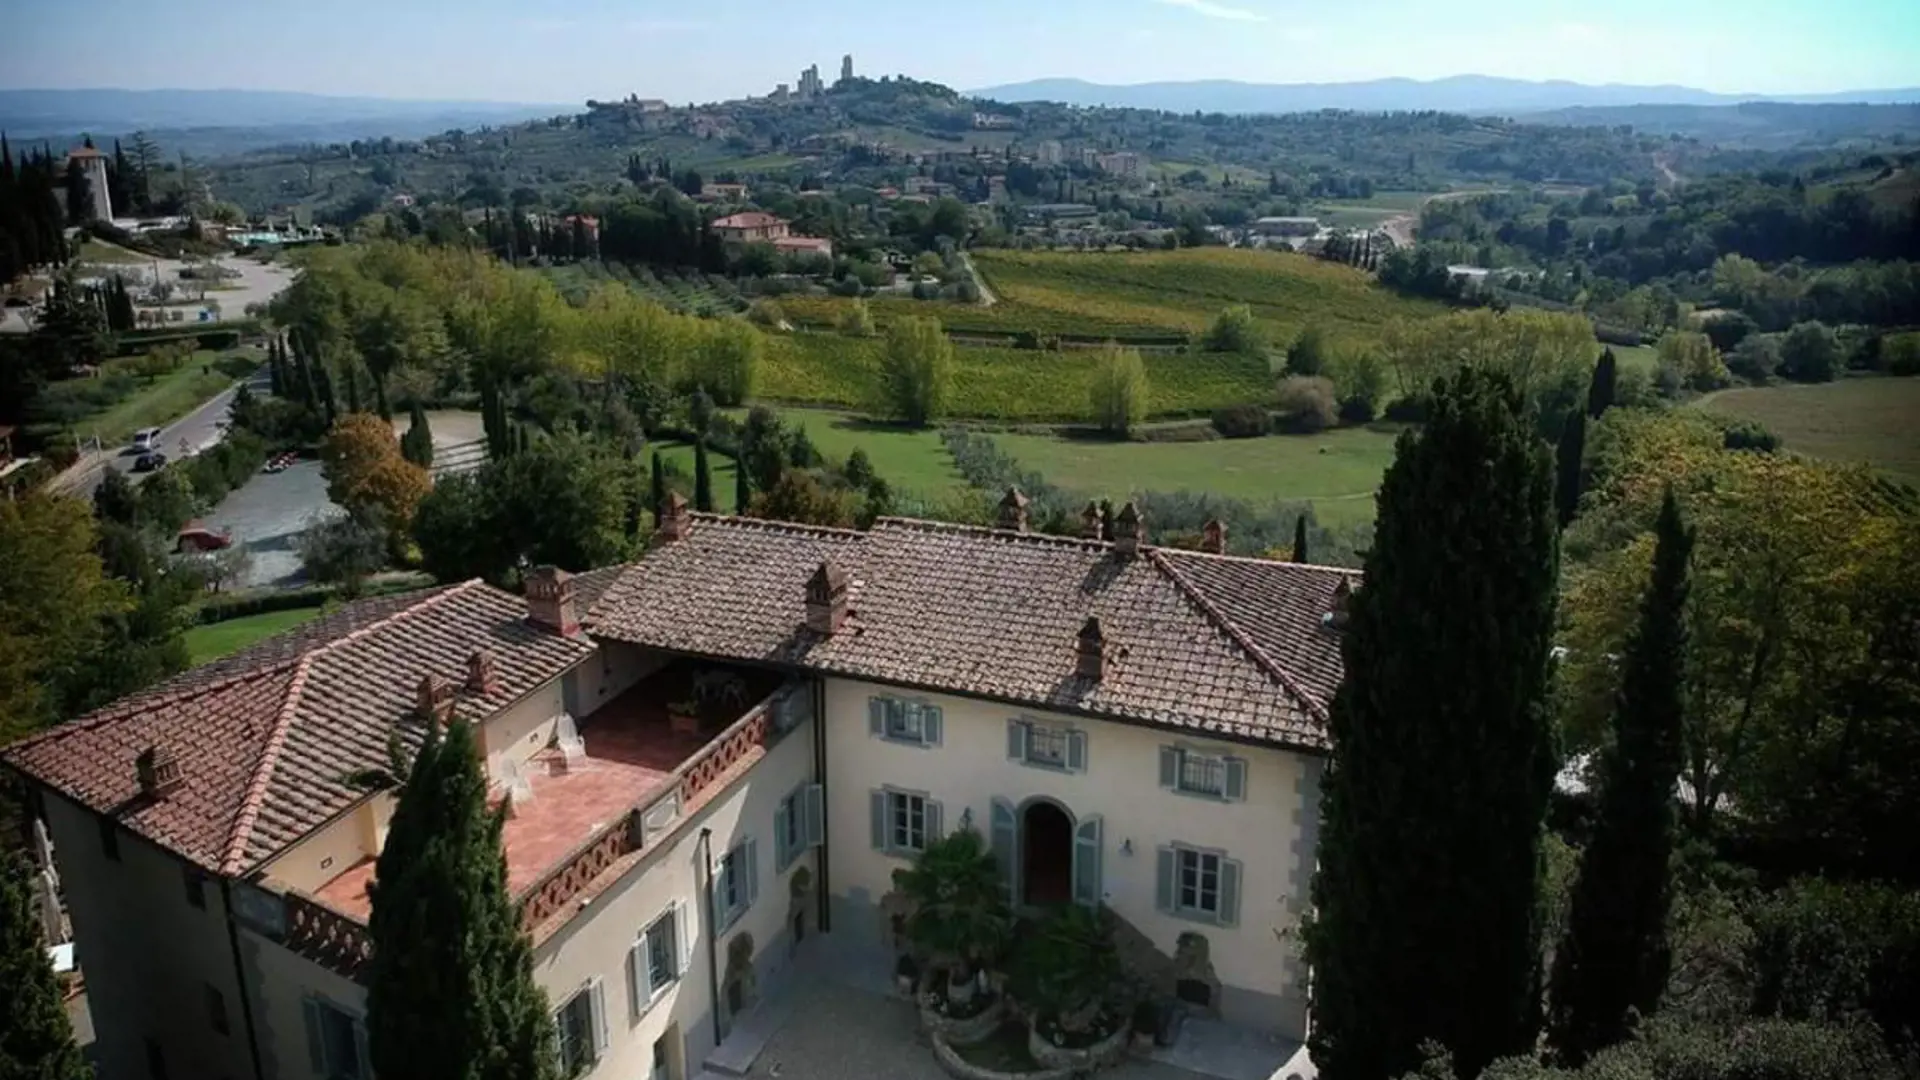 Ditt hotell i Toscana ligger strax utanför San Gimignano och har den finaste utsikten över staden.